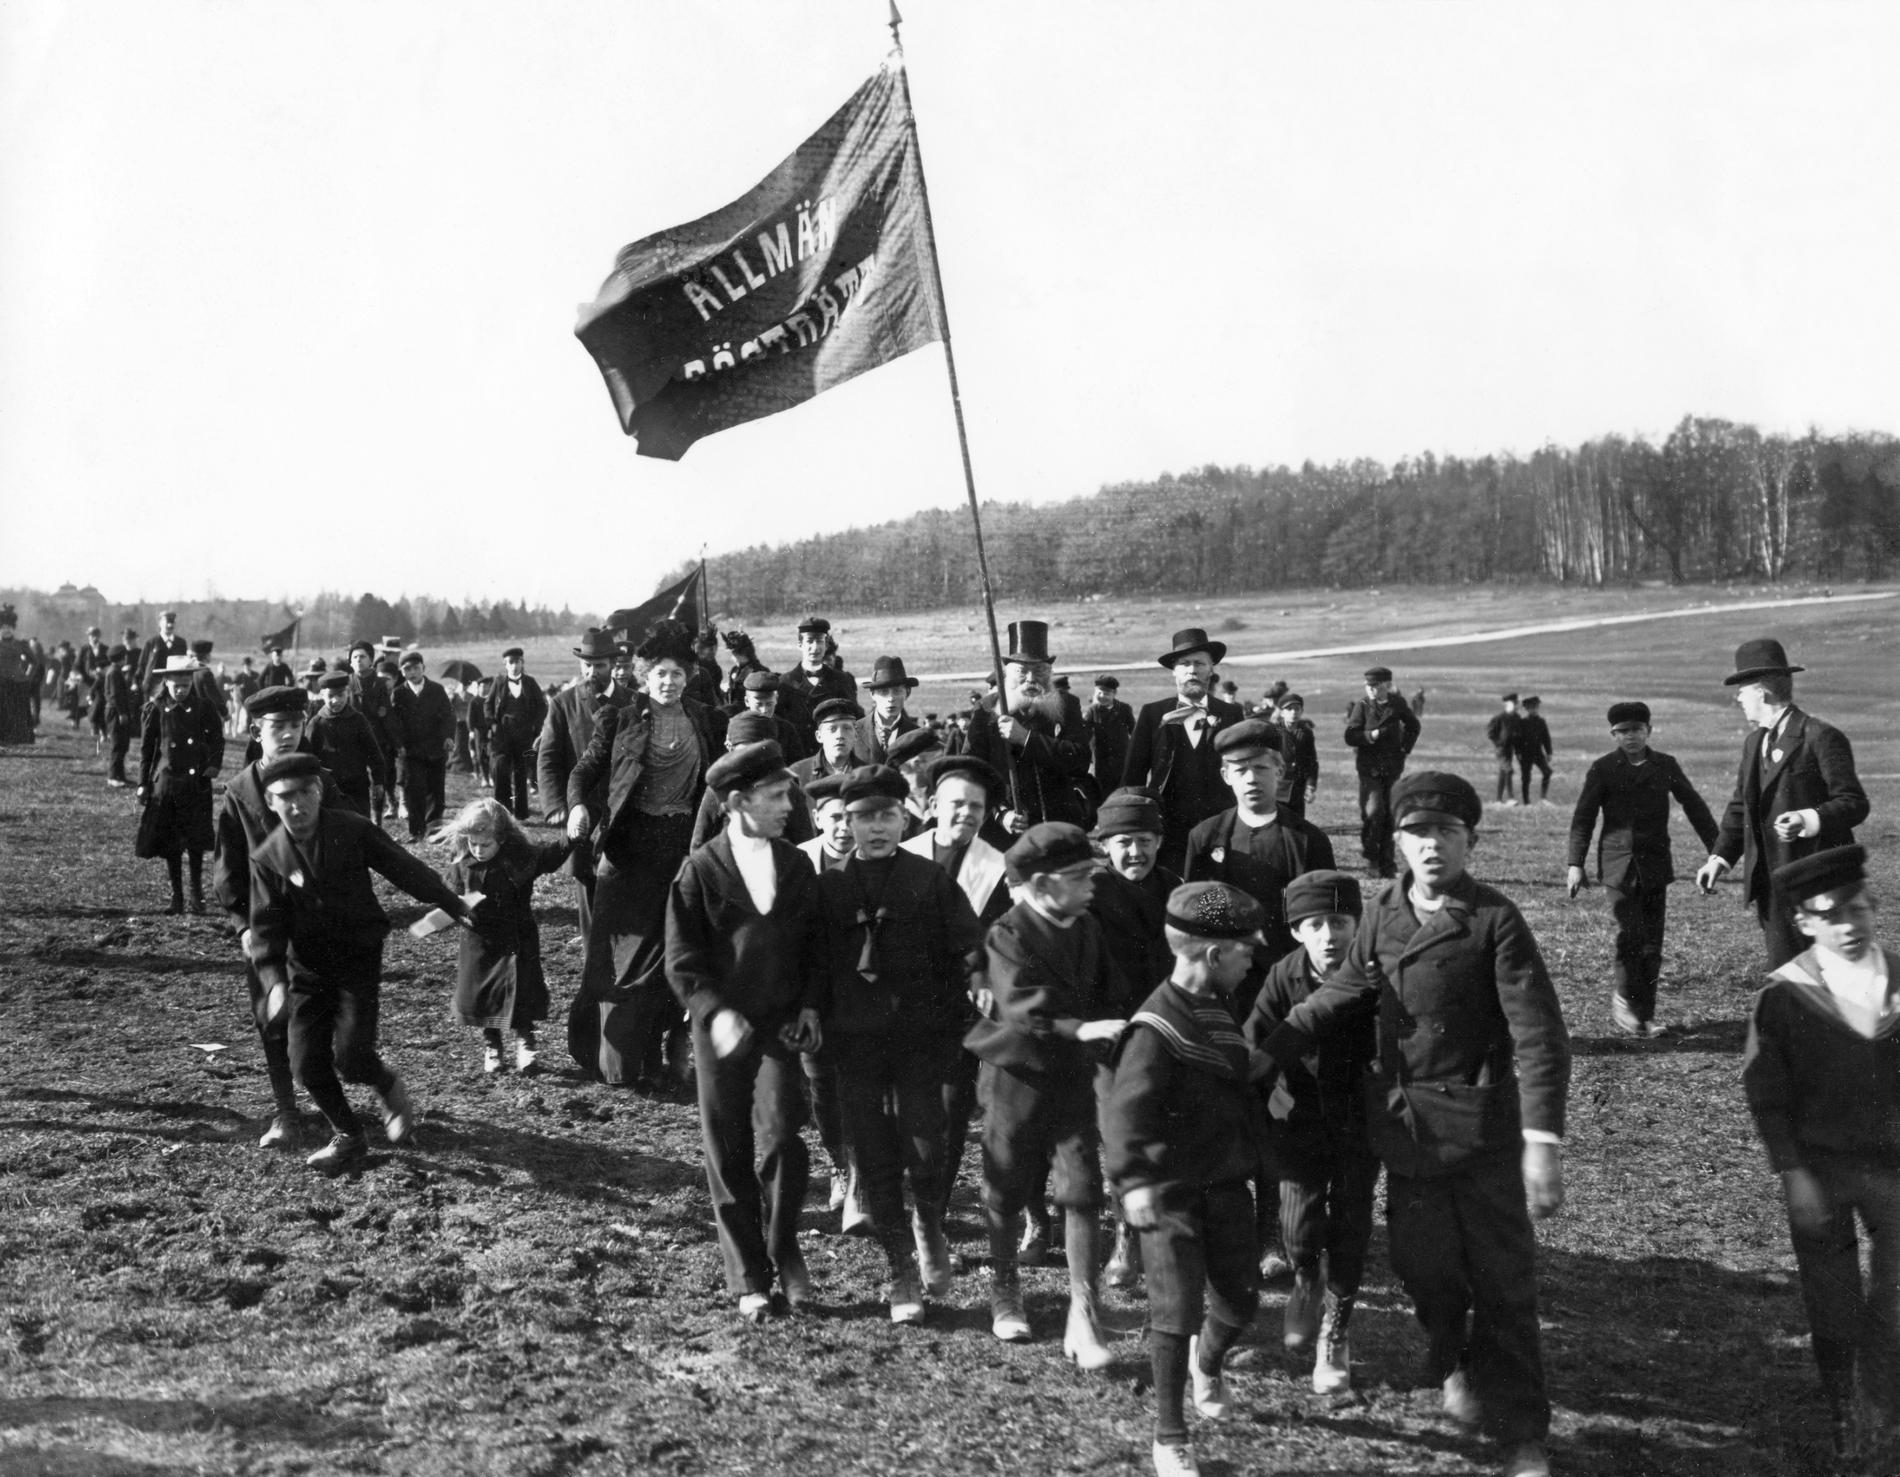 Förstamajdemonstration på Gärdet 1902 i Stockholm. Allmän rösträtt står det på fanan. Kampen för rösträtt var början på Sveriges väg mot det jämlikaste landet i modern tid, om man frågar vänstern.